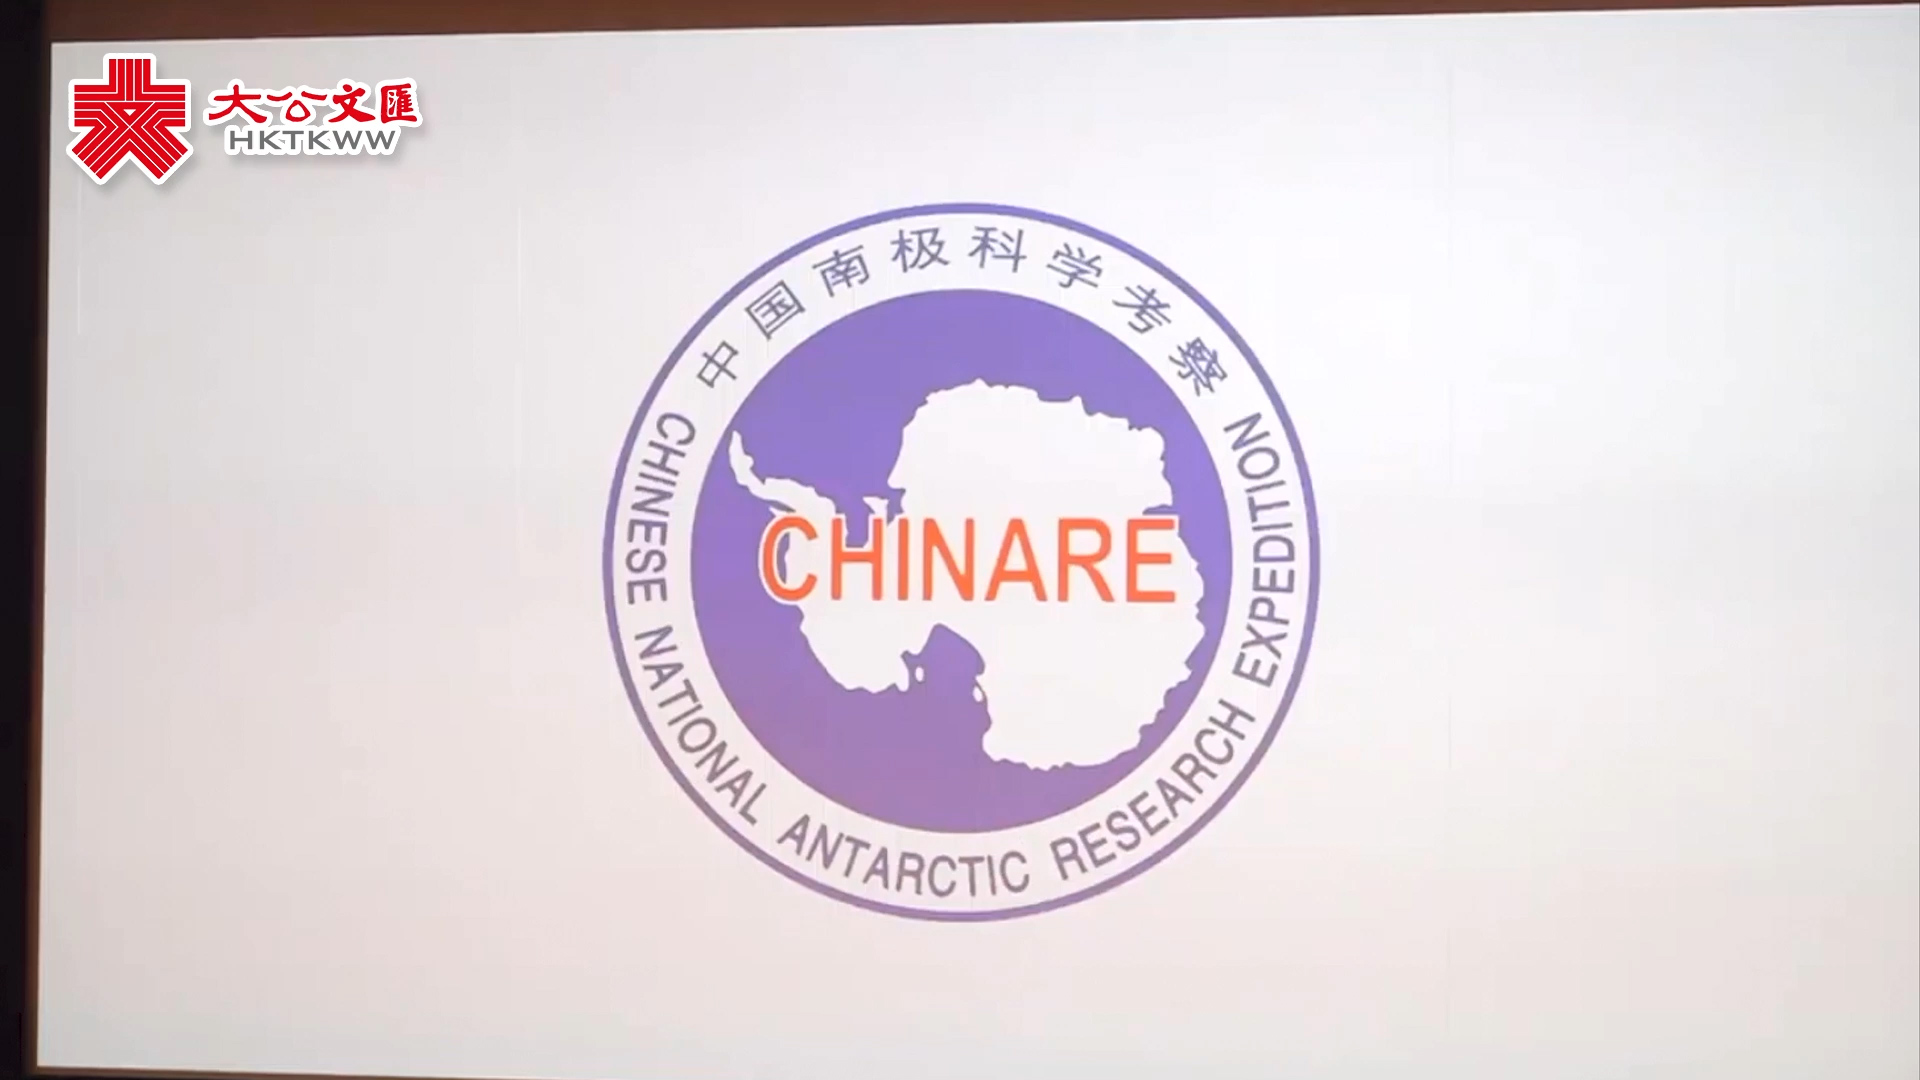 ﻿一条视频告诉你 中国近40载的南极考察之路